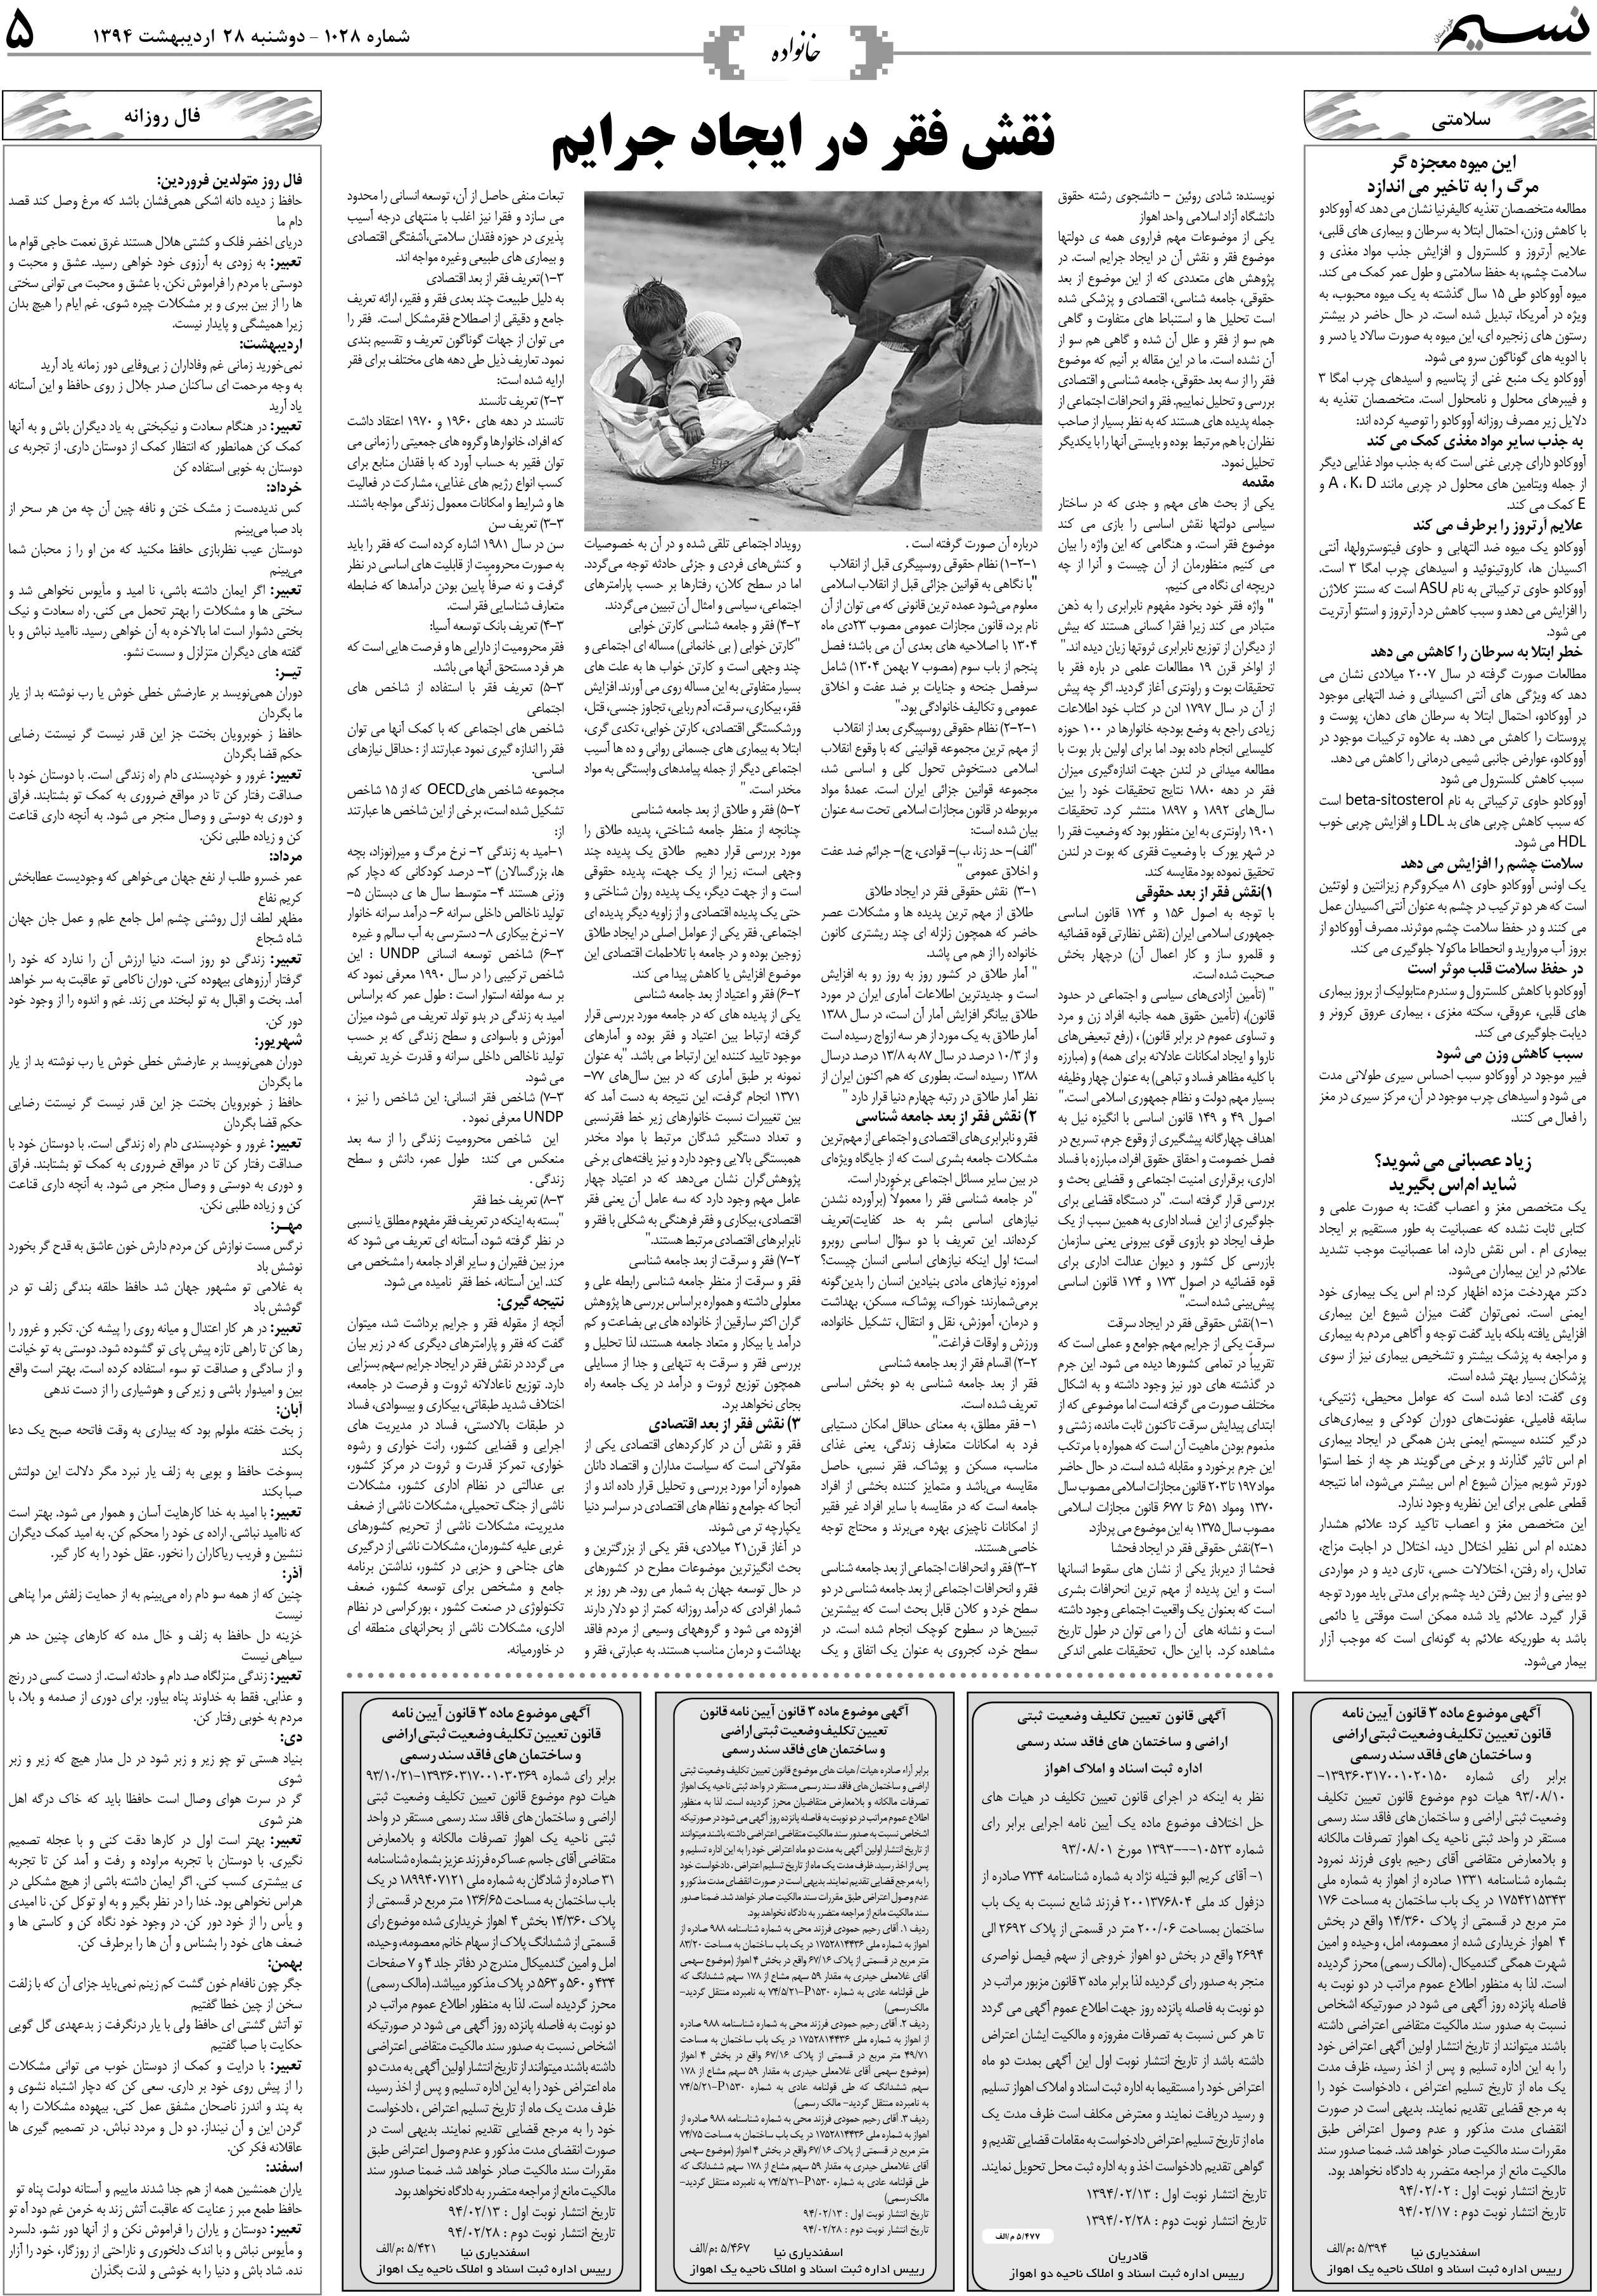 صفحه خانواده روزنامه نسیم شماره 1028